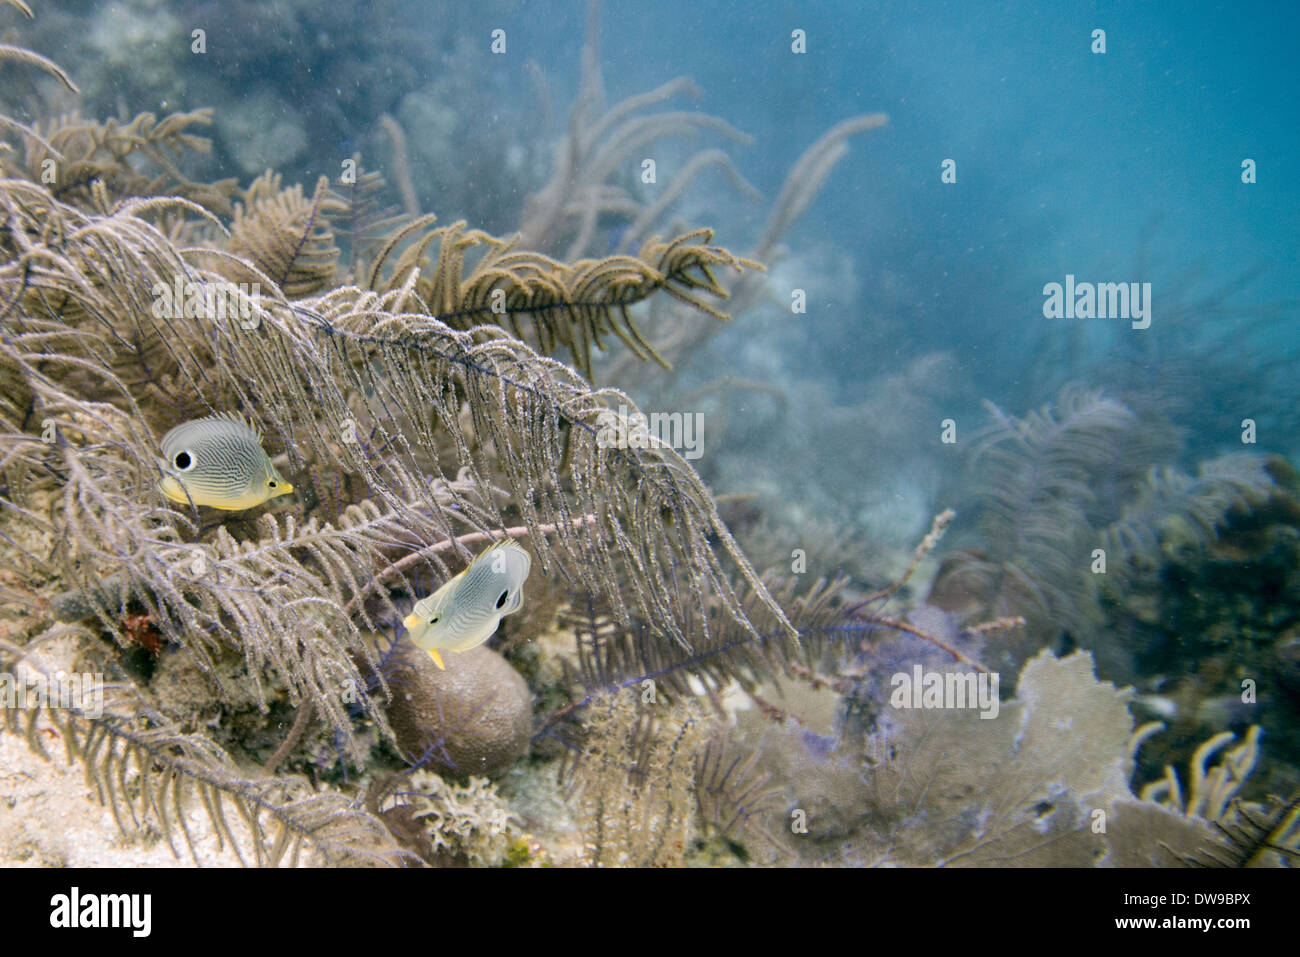 Foureye Butterflyfish (Chaetodon capistratus) swimming underwater, Utila Island, Bay Islands, Honduras Stock Photo